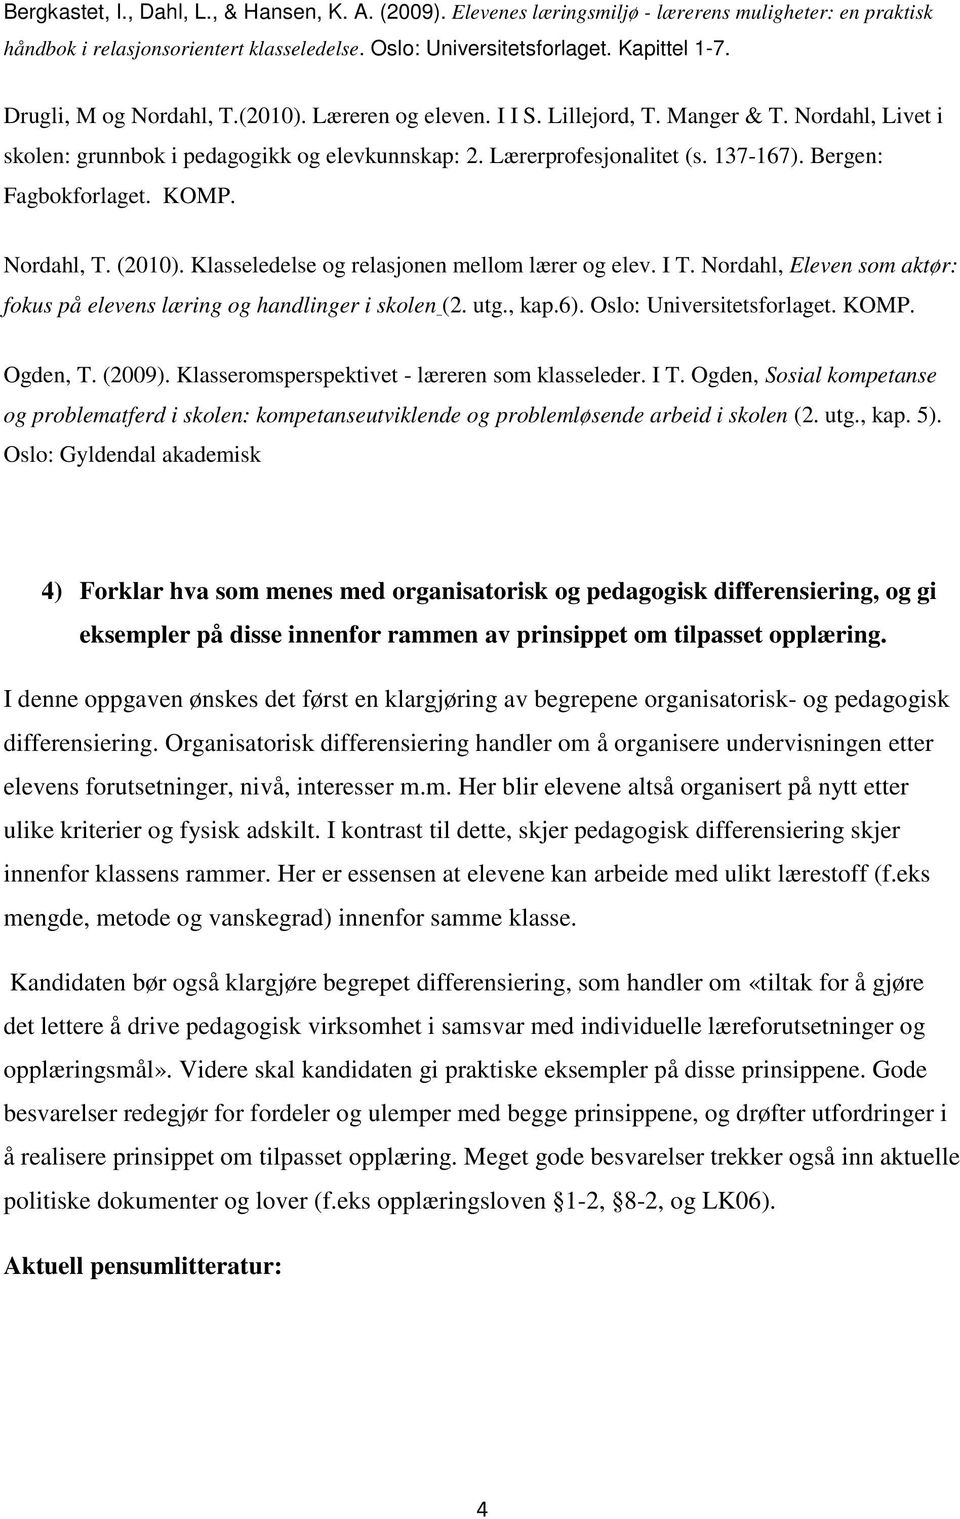 Bergen: Fagbokforlaget. KOMP. Nordahl, T. (2010). Klasseledelse og relasjonen mellom lærer og elev. I T. Nordahl, Eleven som aktør: fokus på elevens læring og handlinger i skolen (2. utg., kap.6).